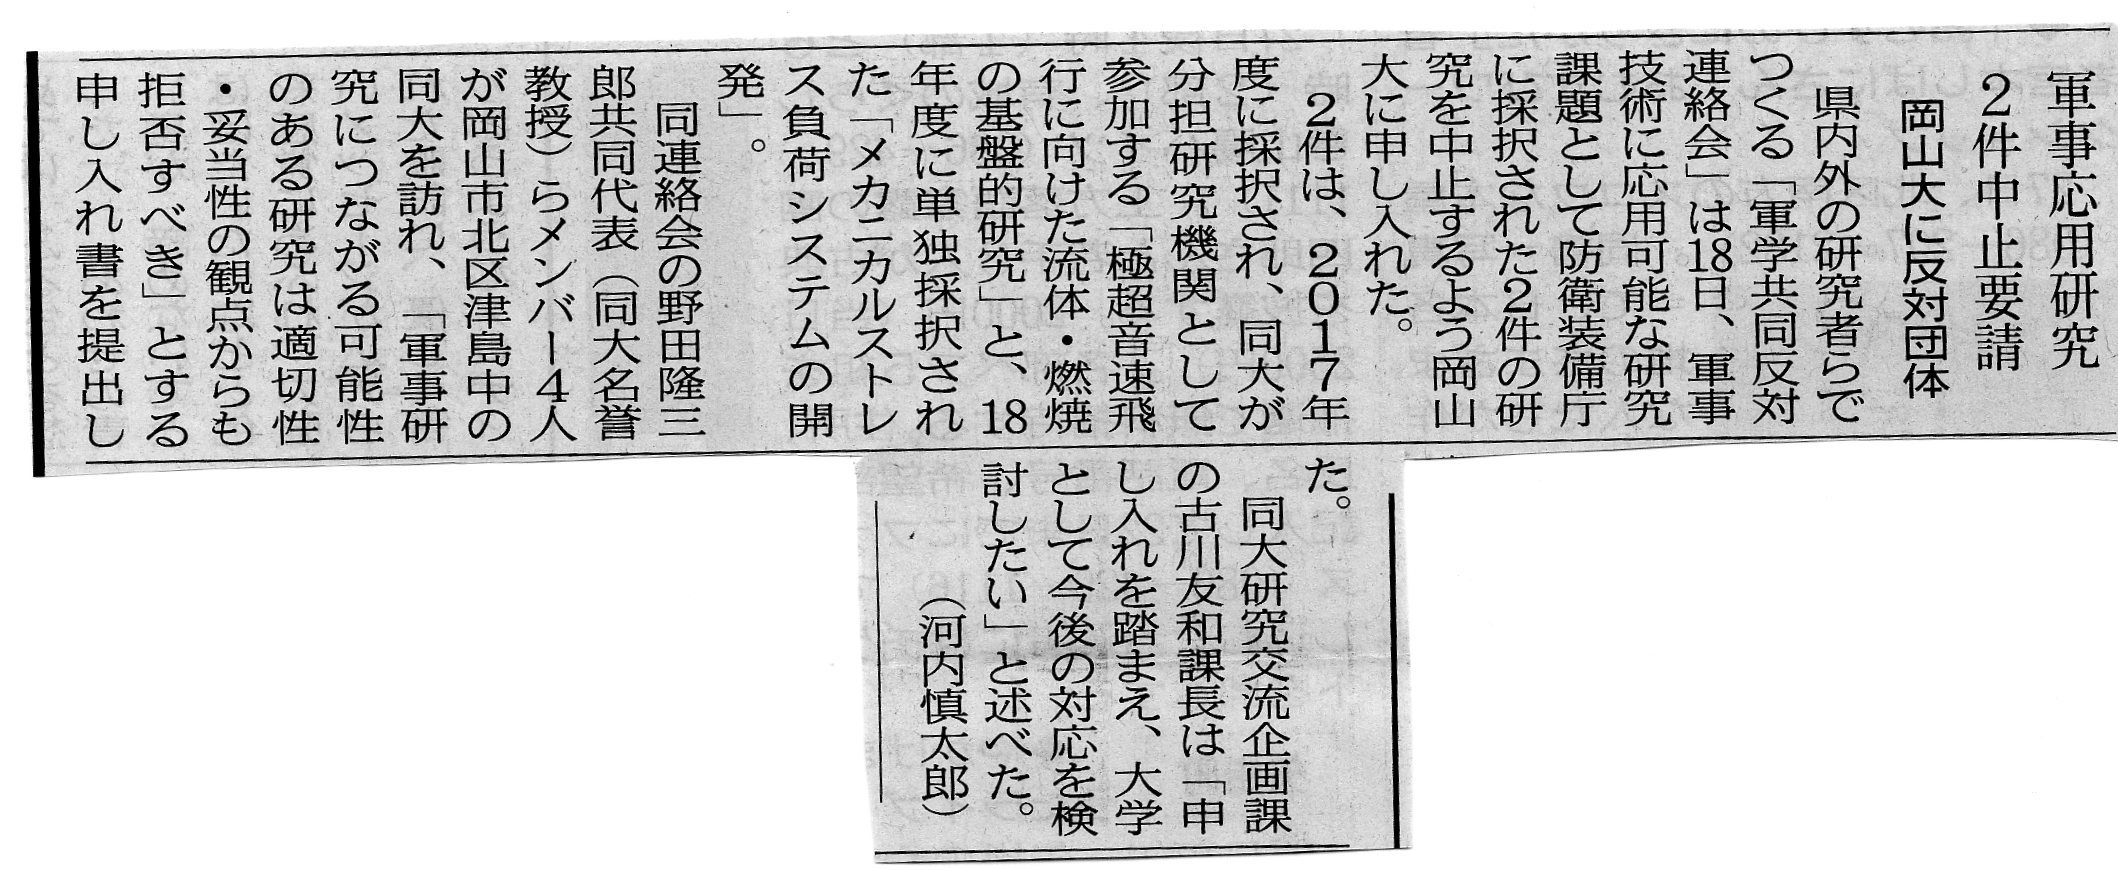 10月18日、大学の軍事研究絶対反対！岡山大学名誉教授の野田隆三郎先生を先頭に岡山大学当局へ申し入れをおこないました_d0155415_15313471.jpg